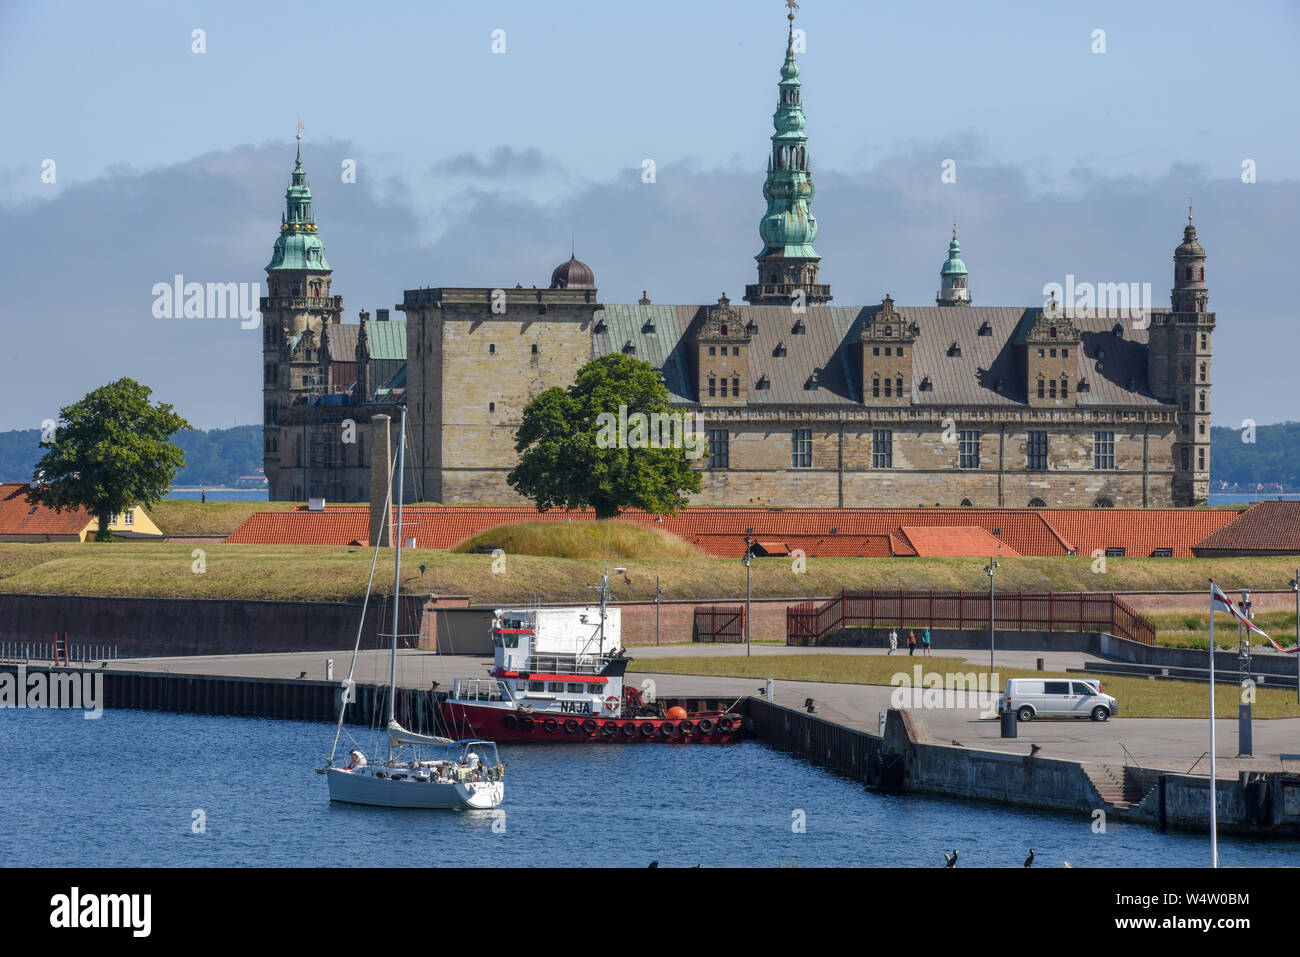 Helsingor, Denmark - 29 June 2019: Kronborg castle at Helsingor on Denmark Stock Photo